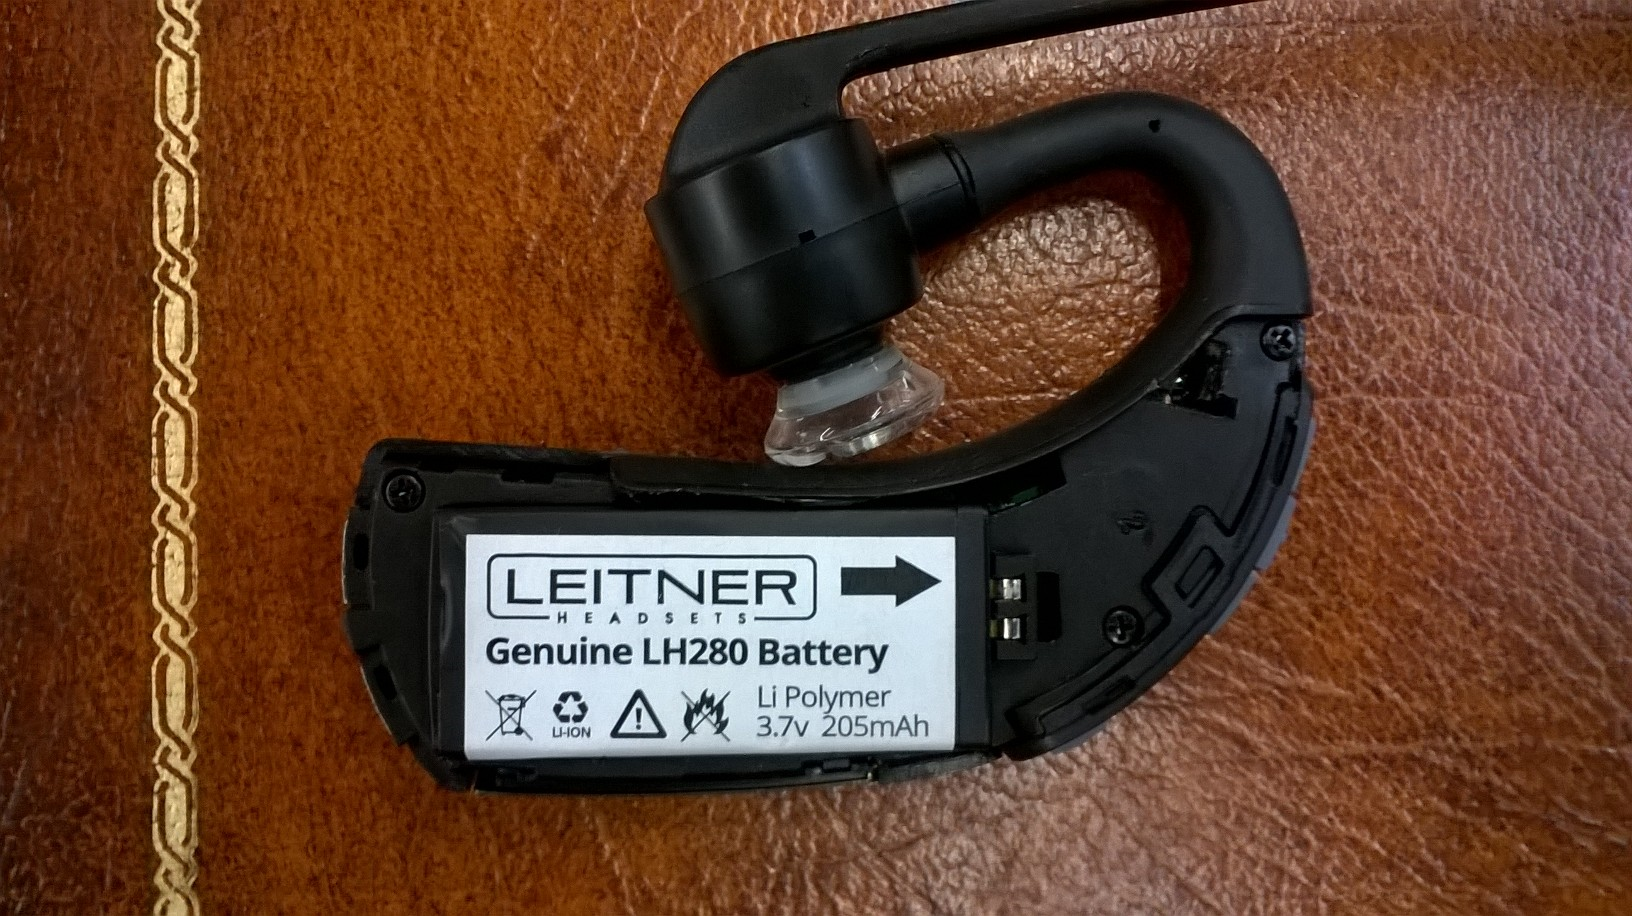 Leitner LH280 with battery door open, exposing headset battery